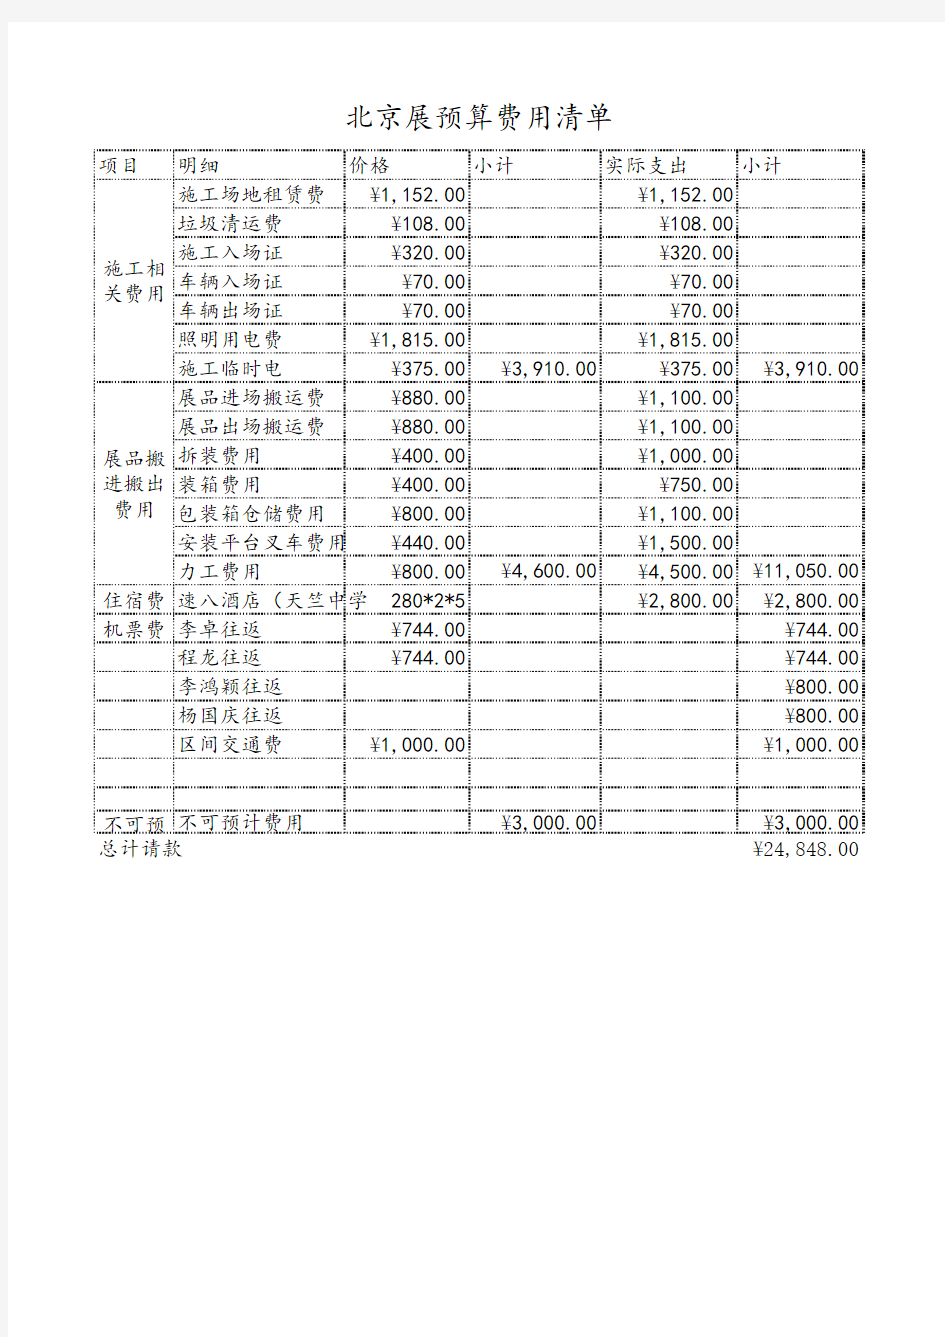 2015 北京展会预算费用